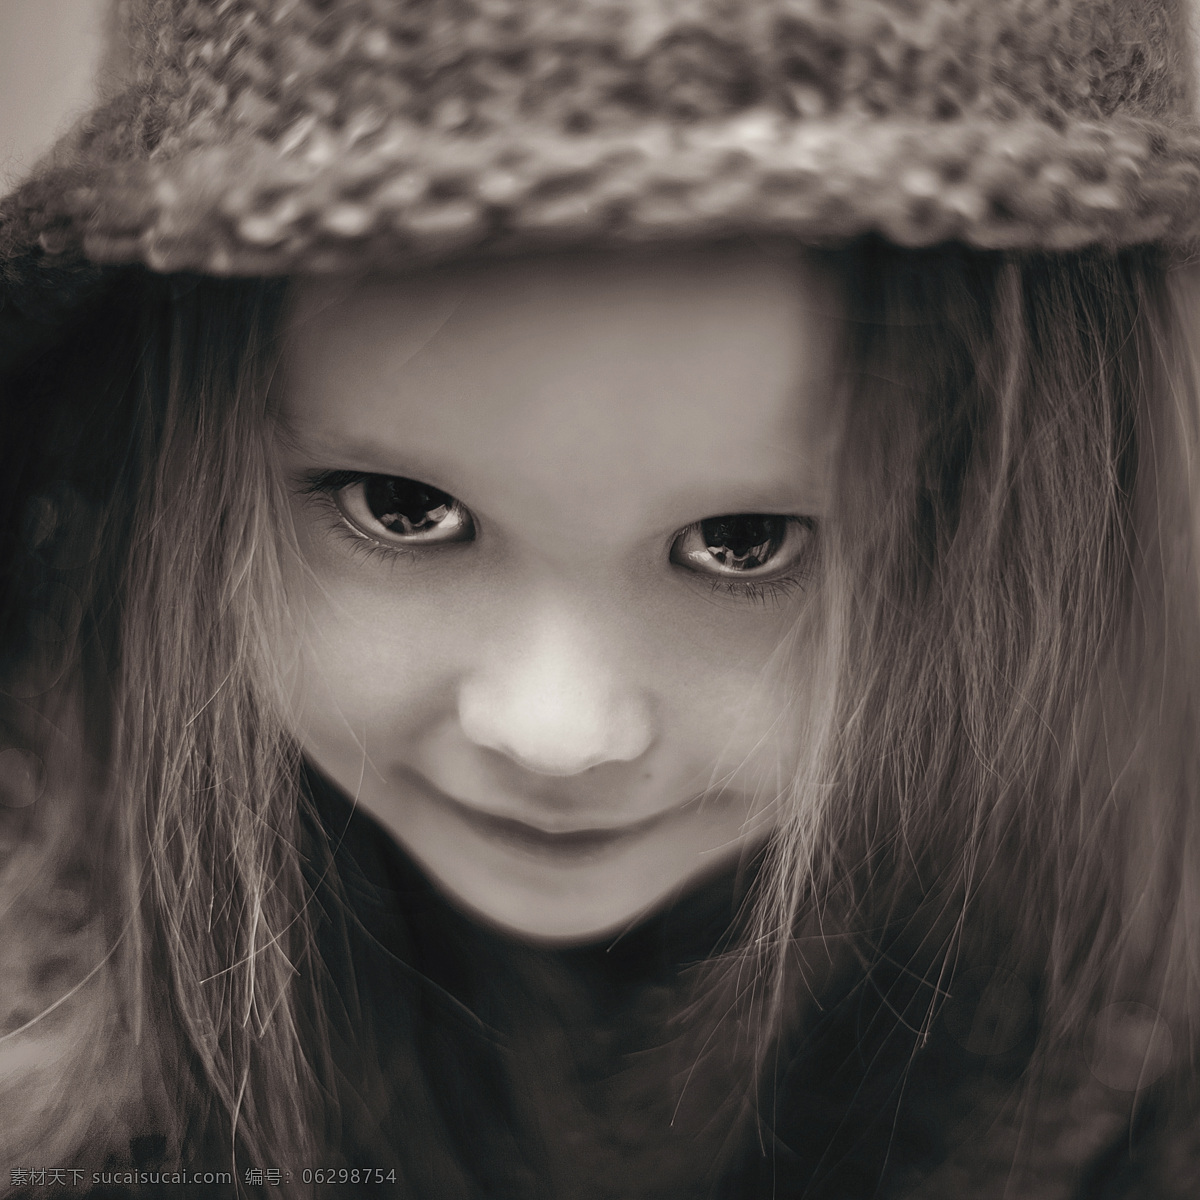 戴帽子 微笑 长发 女孩 戴帽子的女孩 长发女孩 儿童 儿童图片 人物图片